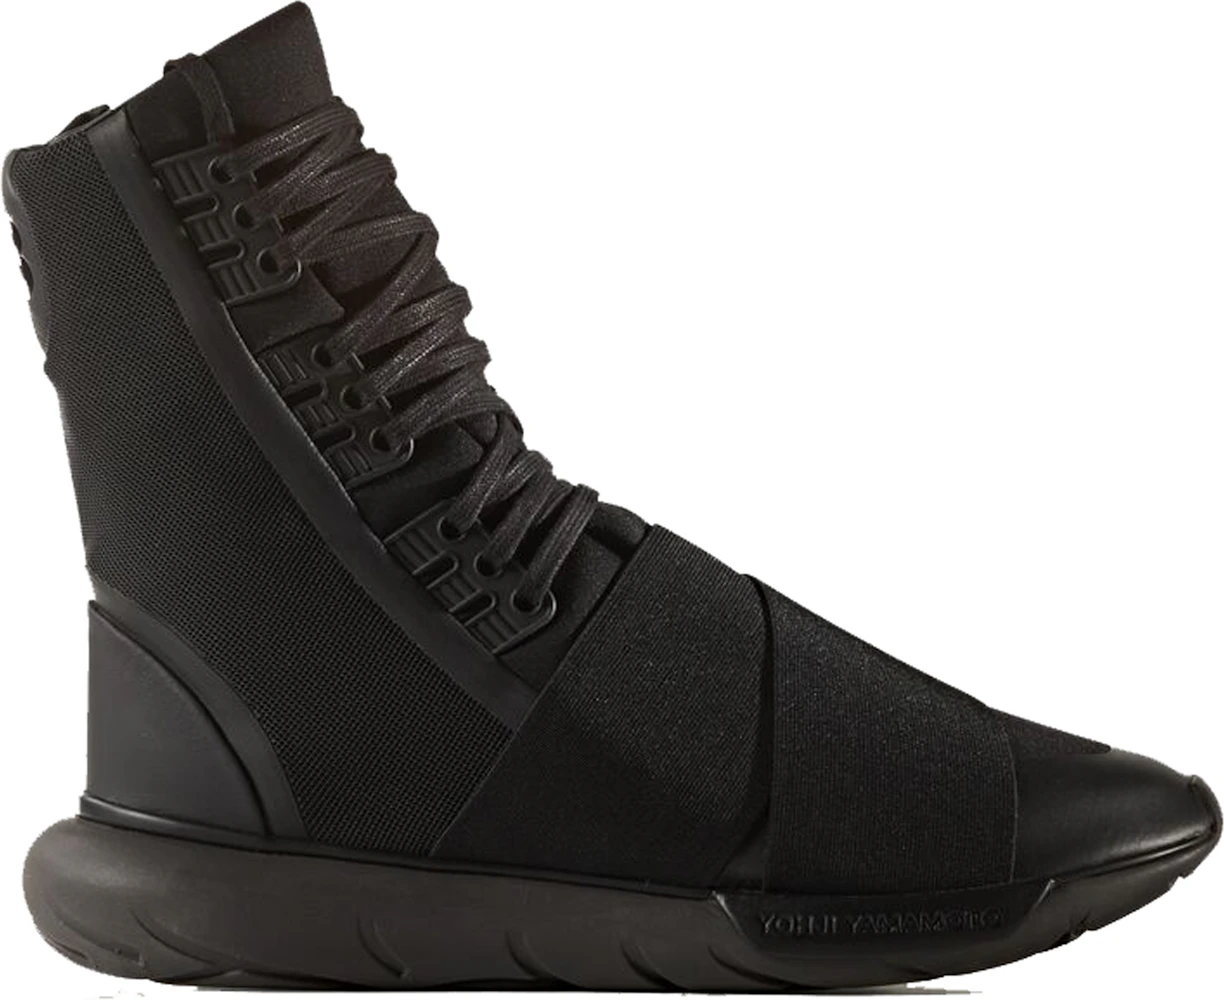 adidas Y-3 Qasa Boot Triple Black Men's - BY2629 - US